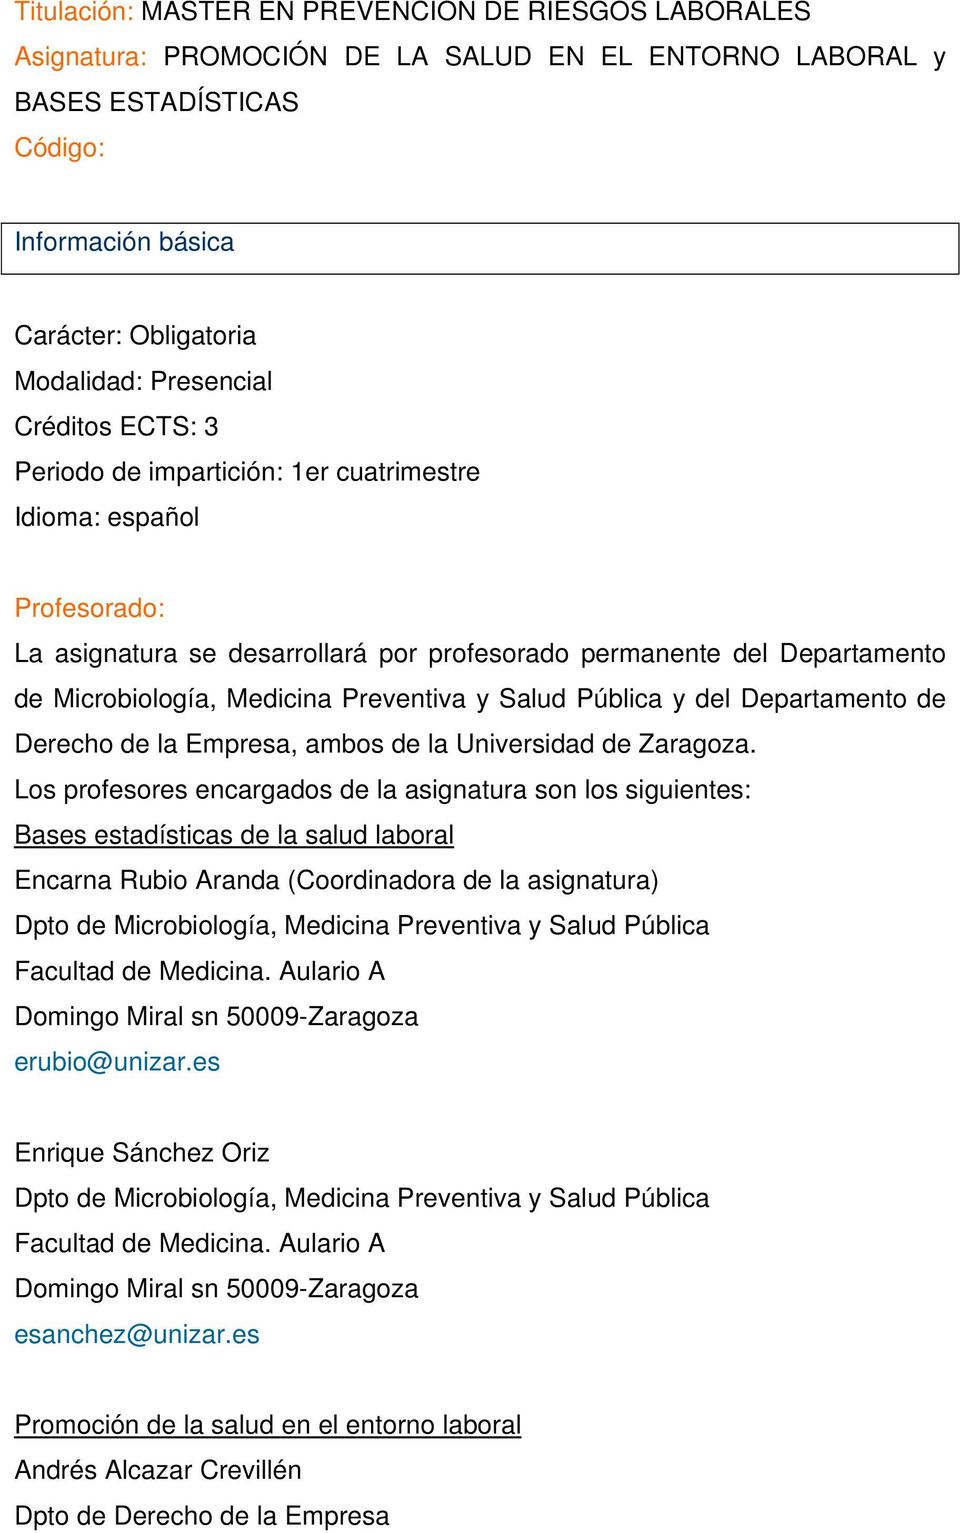 Preventiva y Salud Pública y del Departamento de Derecho de la Empresa, ambos de la Universidad de Zaragoza.